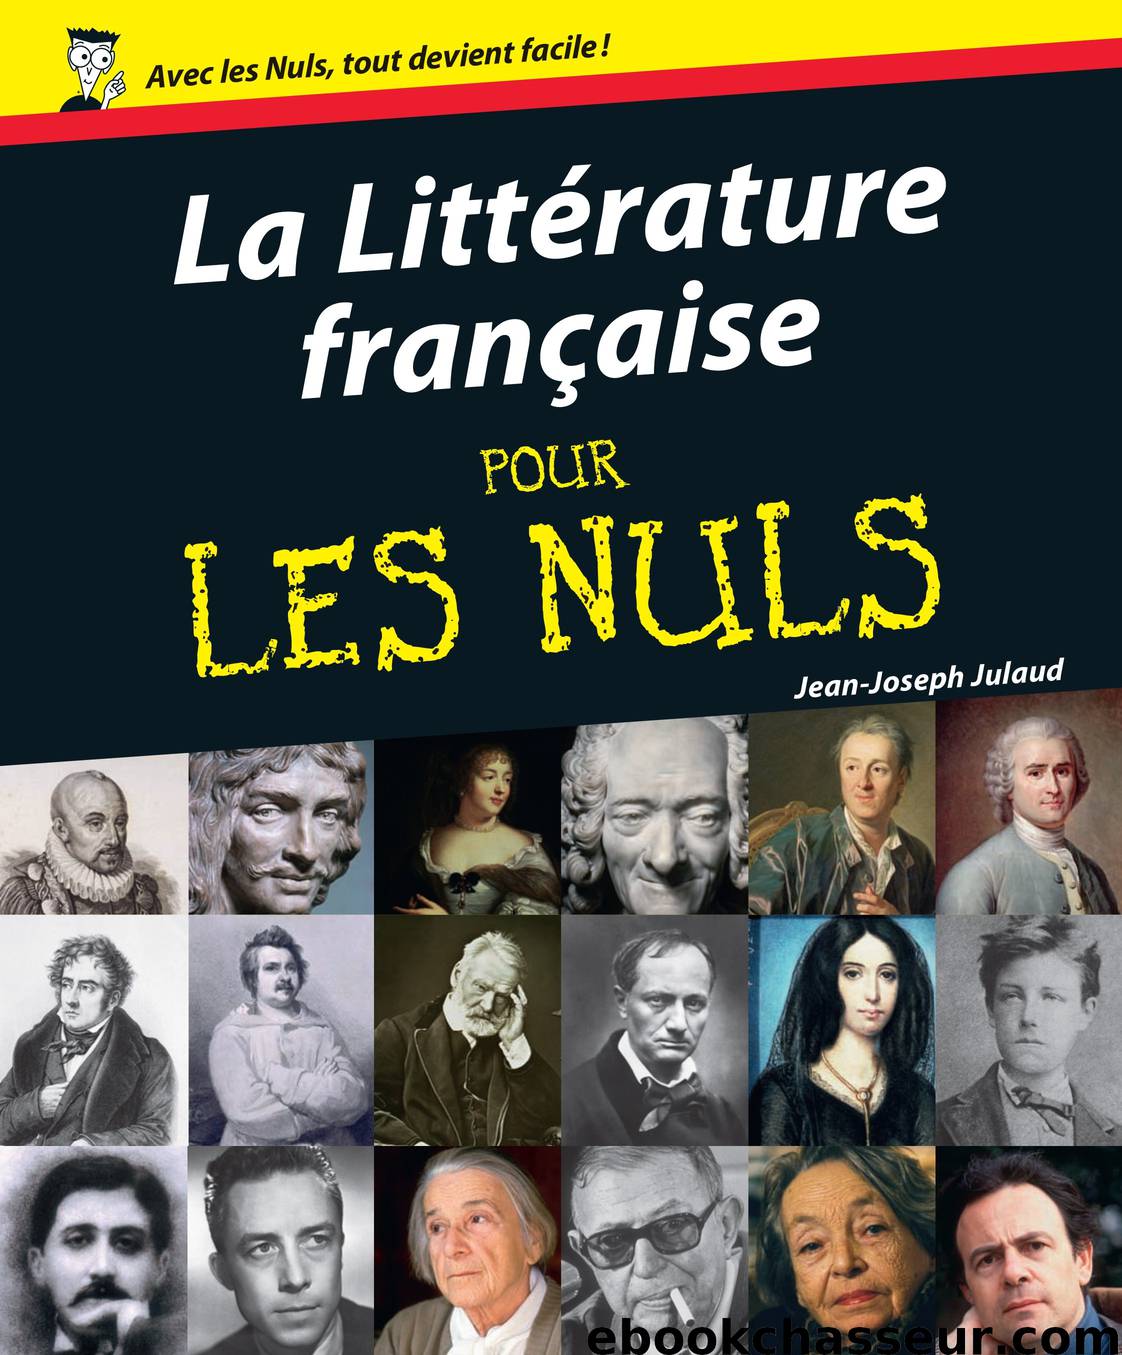 La littérature française pour les nuls by Julaud Jean-Joseph